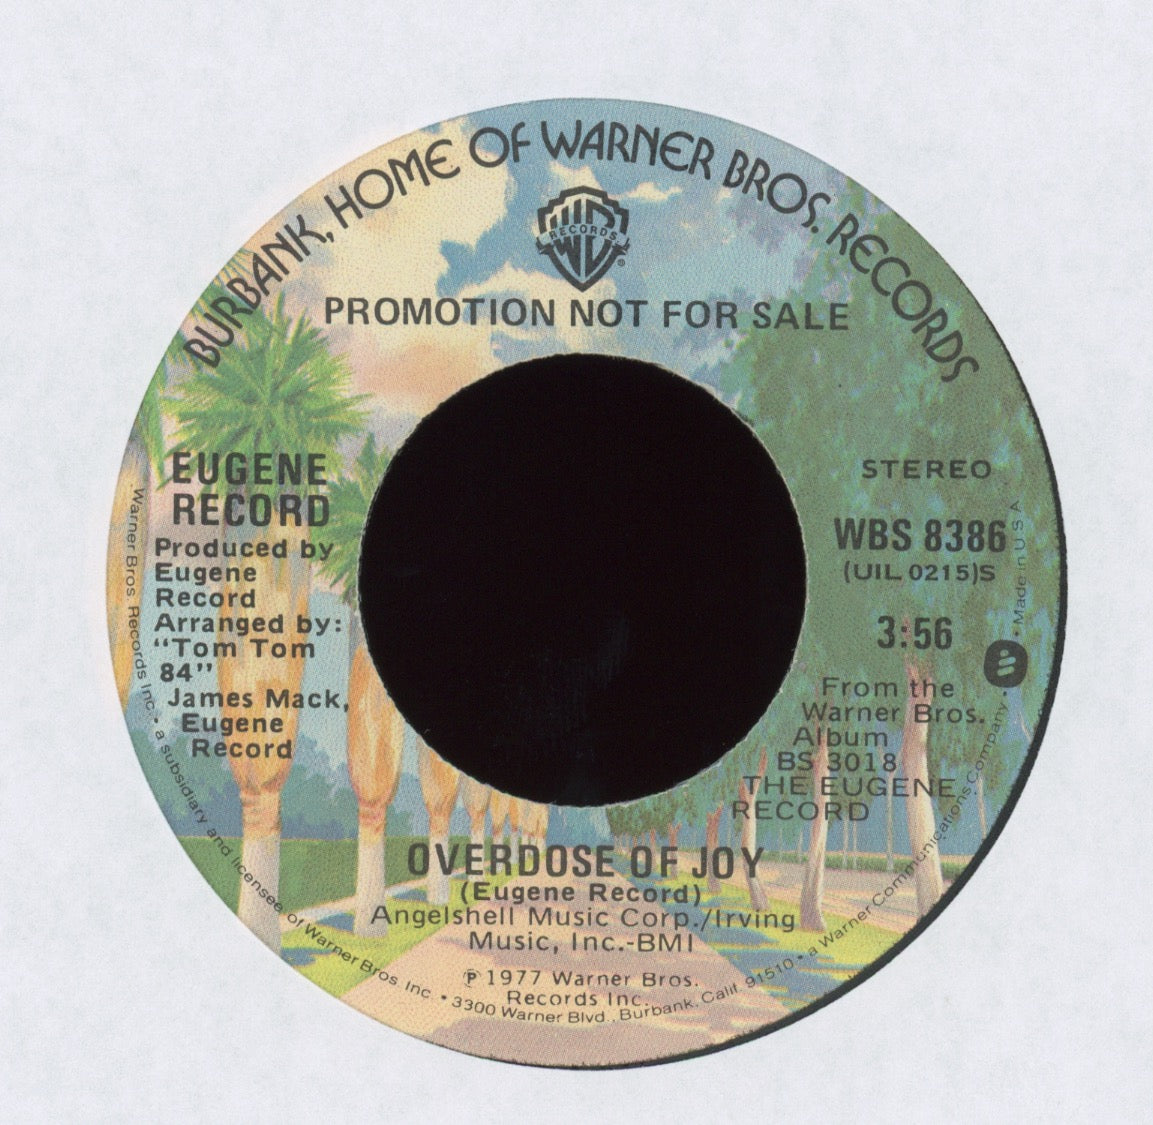 Eugene Record - Overdose Of Joy on WB Promo